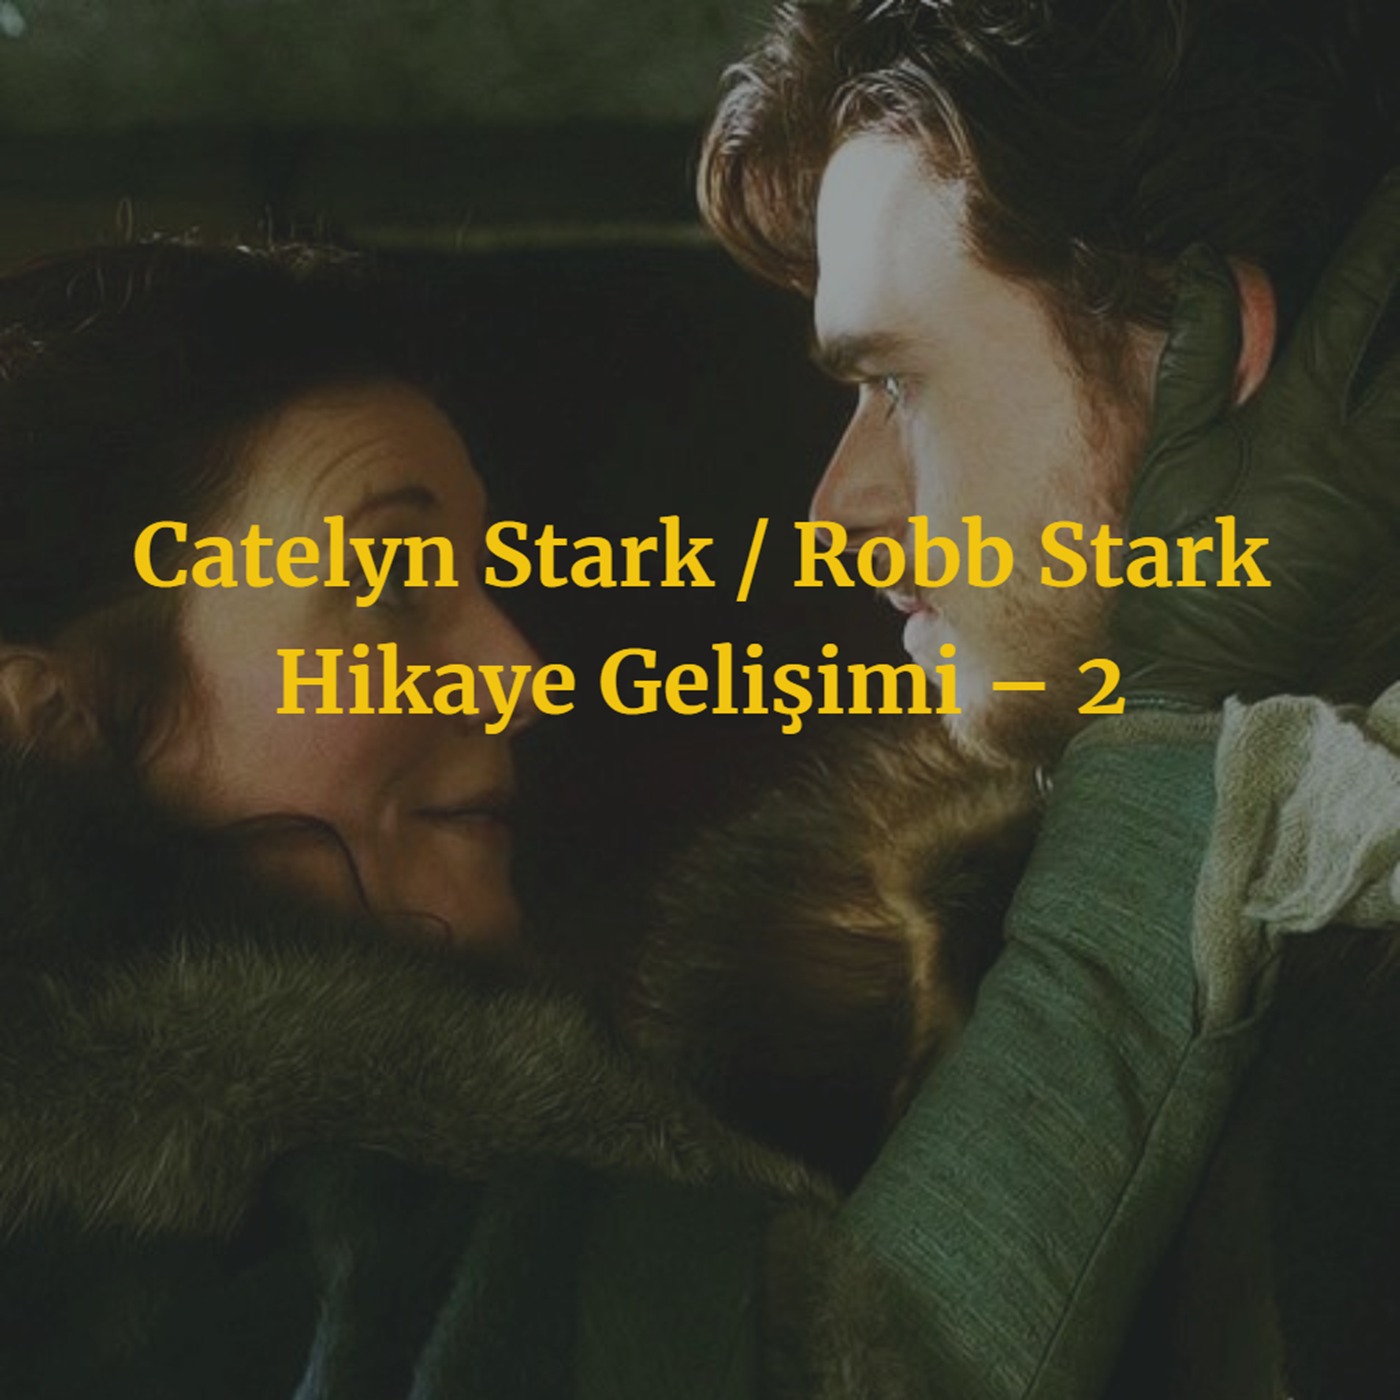 Catelyn Stark / Robb Stark Hikaye Gelişimi – 2